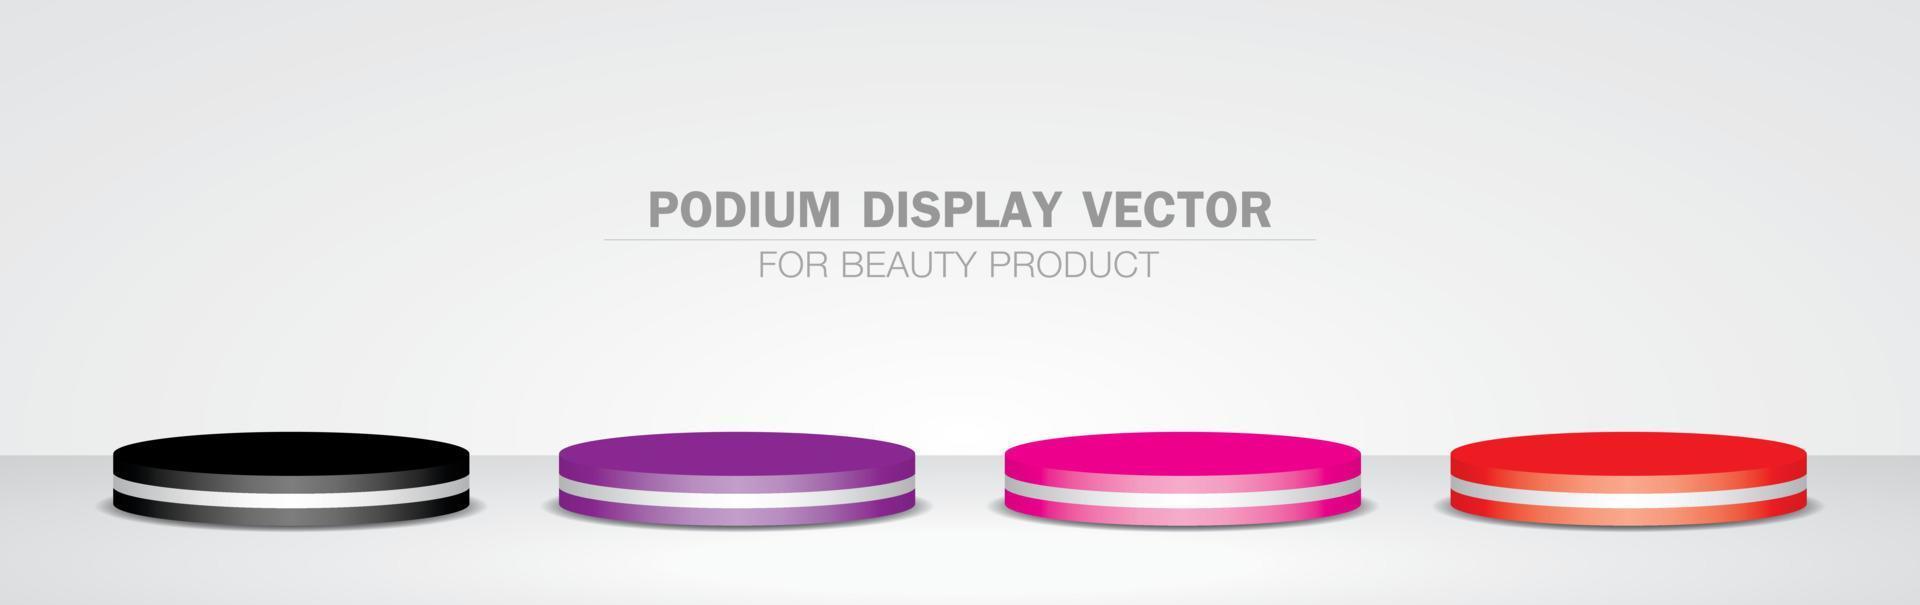 trendige rote, rosa, lila und schwarze Kreispodiumsanzeige 3D-Illustrationsvektorsammlung für das Setzen von Schönheits- und Kosmetikprodukten vektor